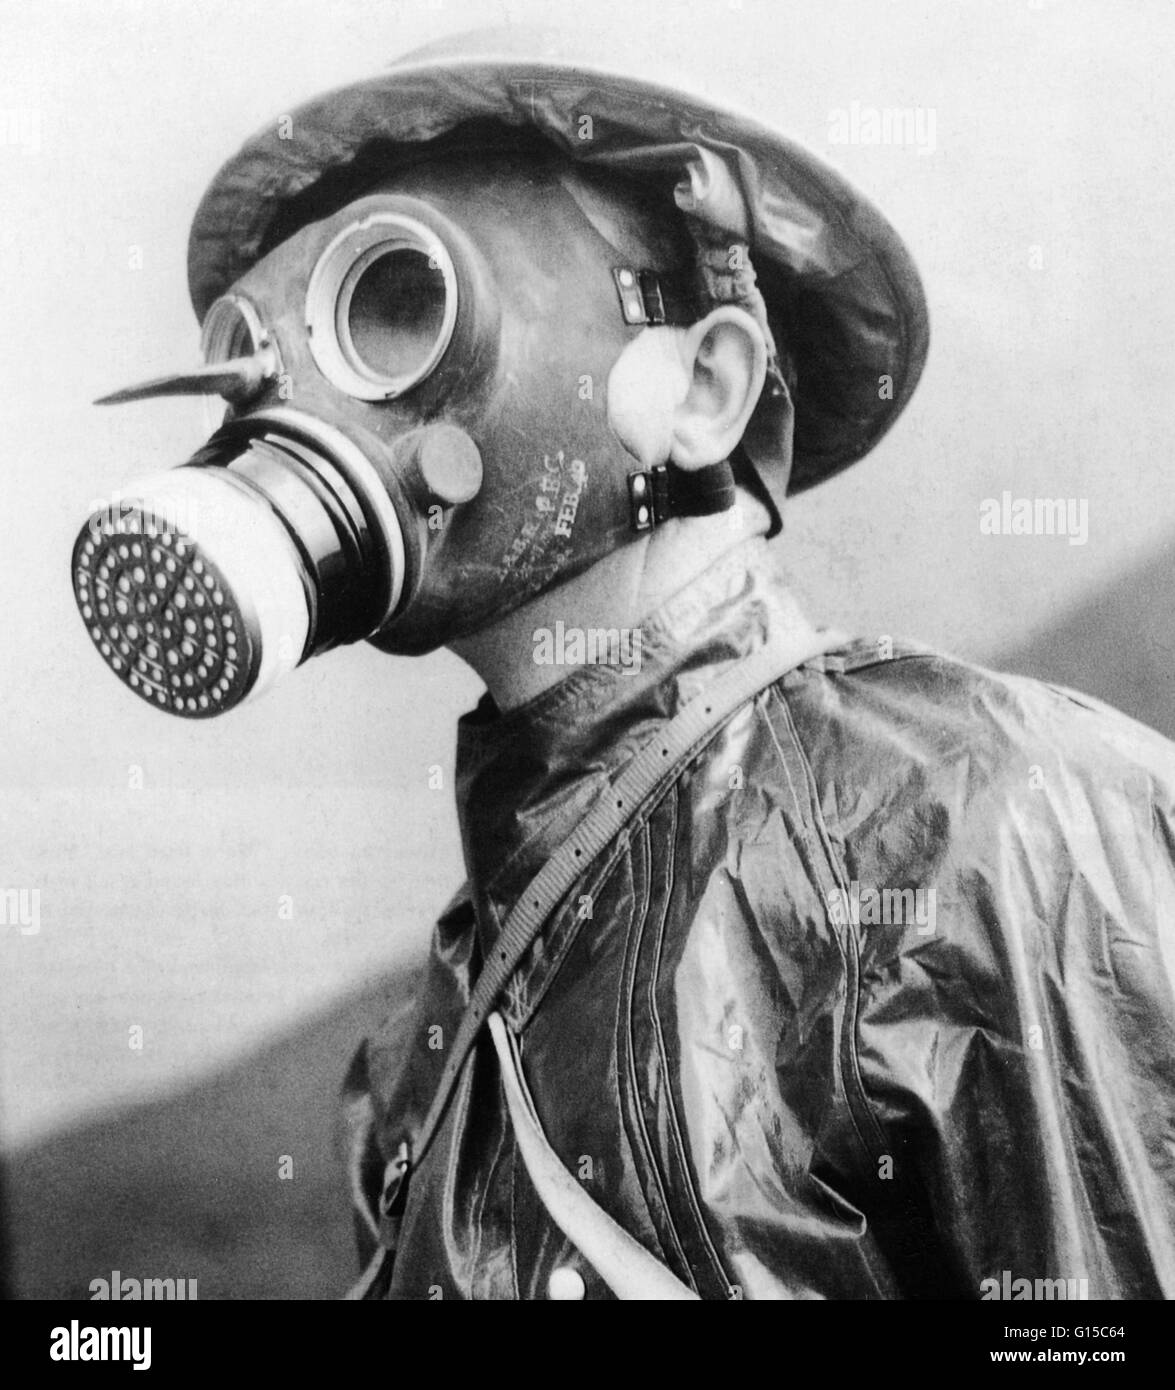 Maschera antigas 1940 immagini e fotografie stock ad alta risoluzione -  Alamy